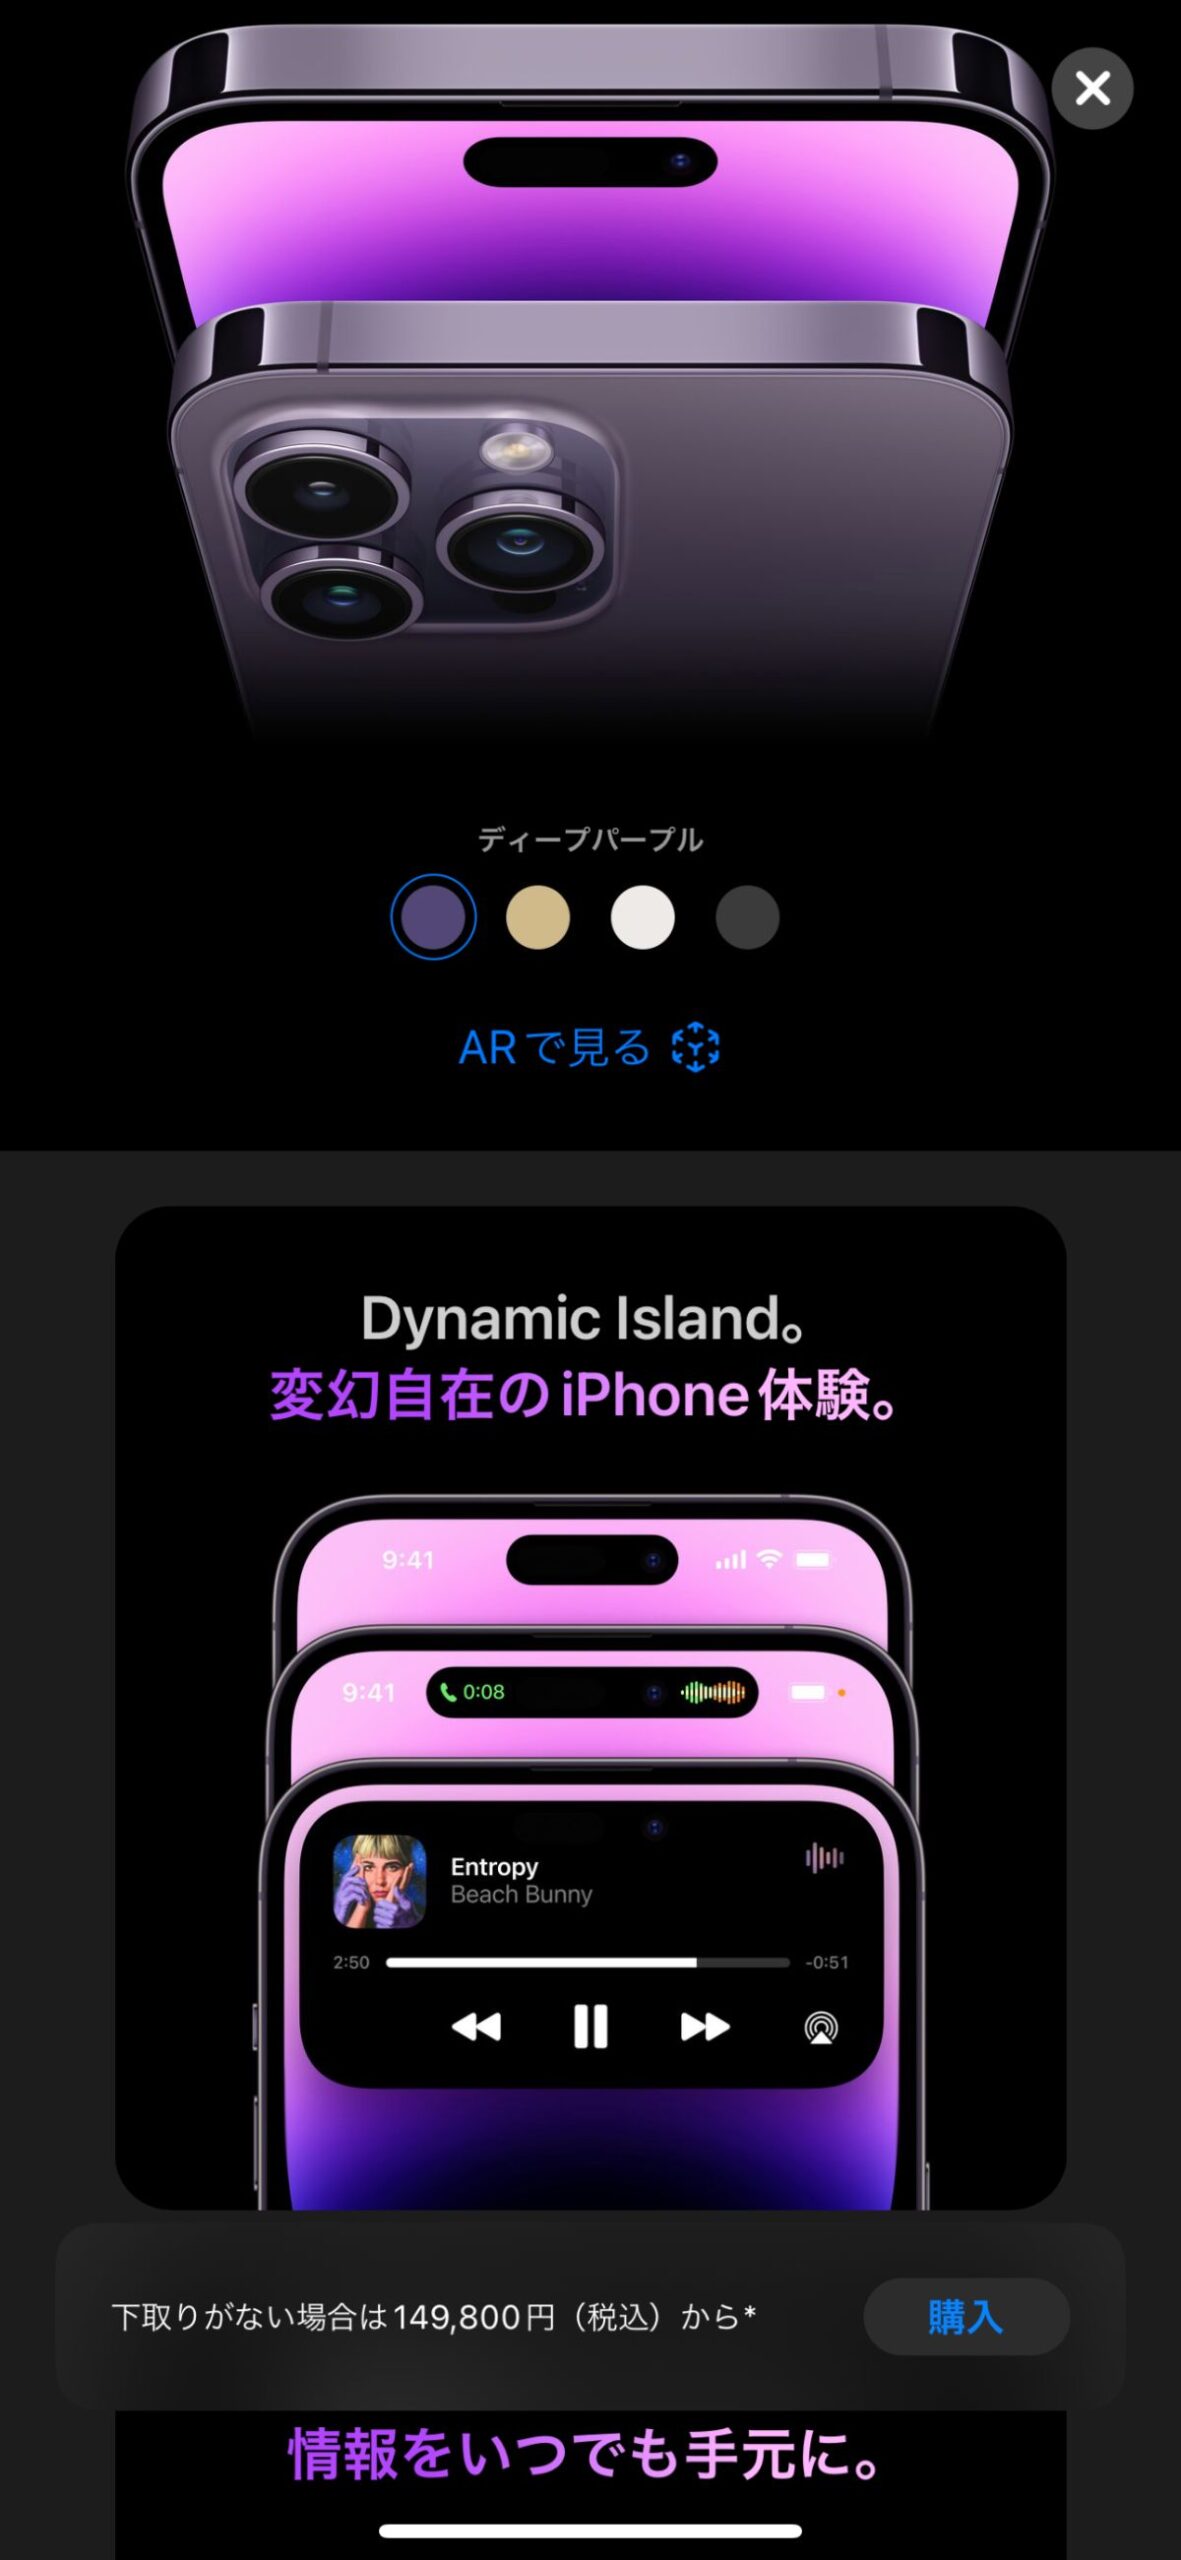 iPhone14 Pro Max